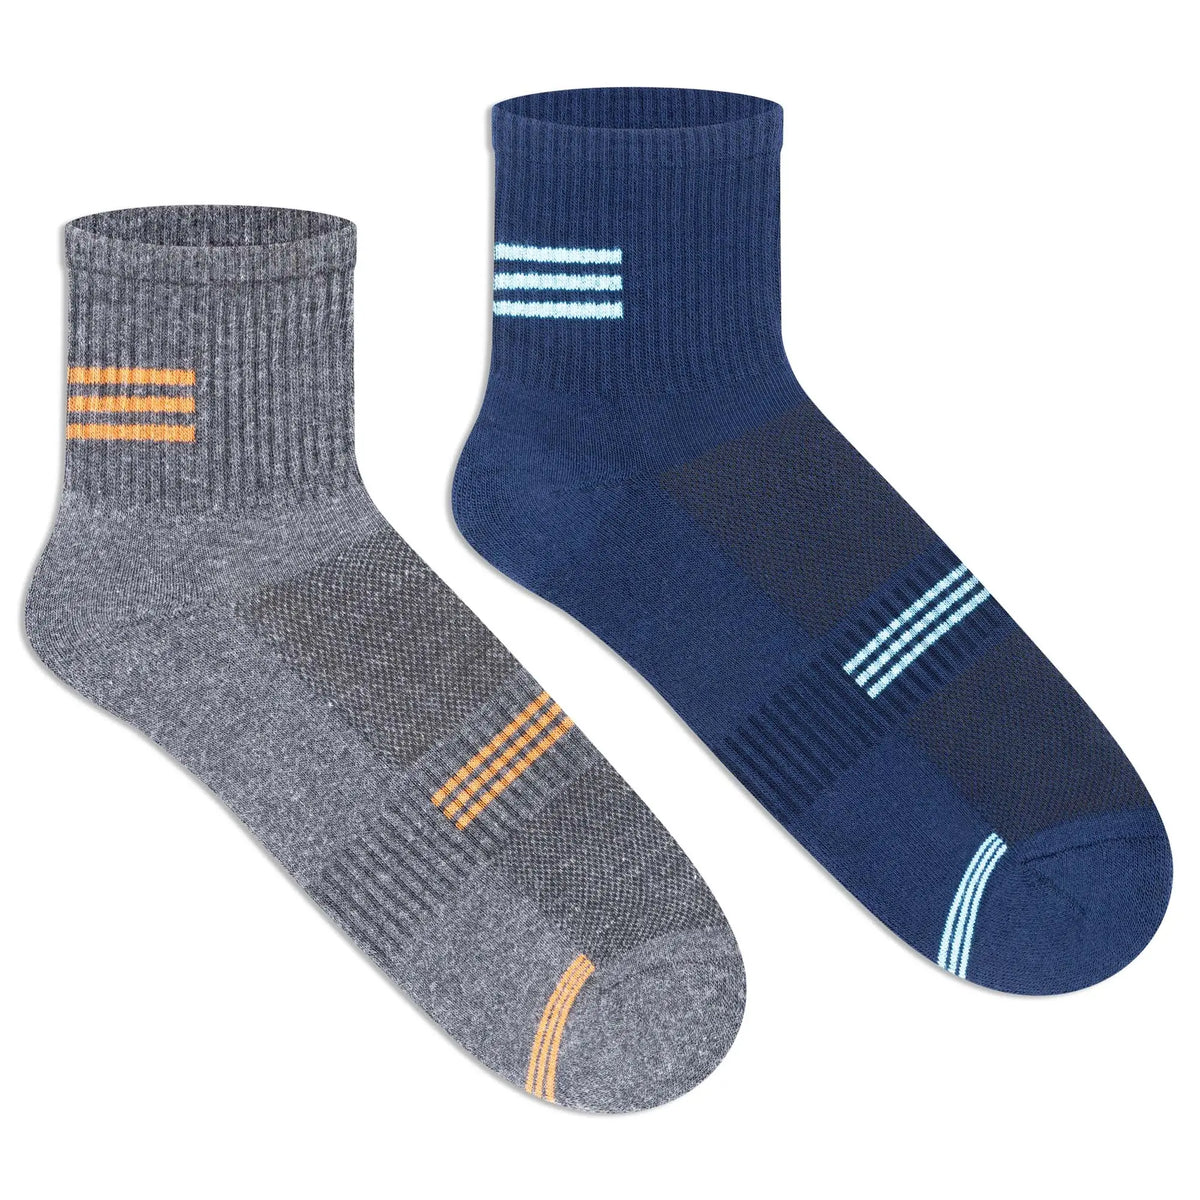 Sports Ankle Socks for Men (Pack of 2)